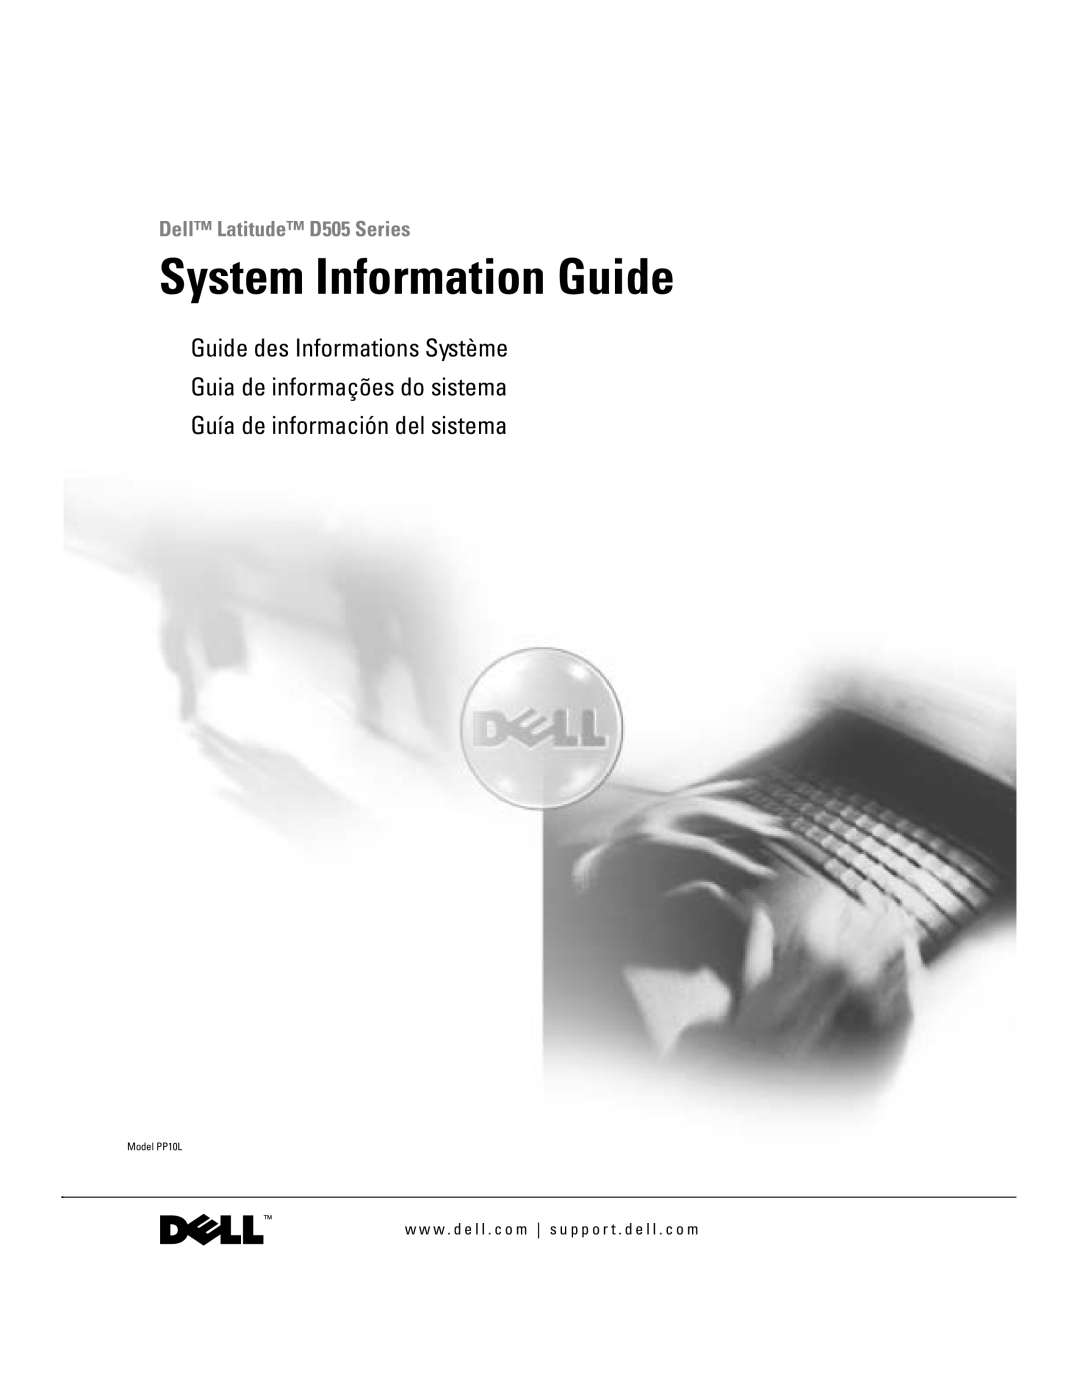 Dell manual System Information Guide, Dell Latitude D505 Series, Guía de información del sistema, Model PP10L 